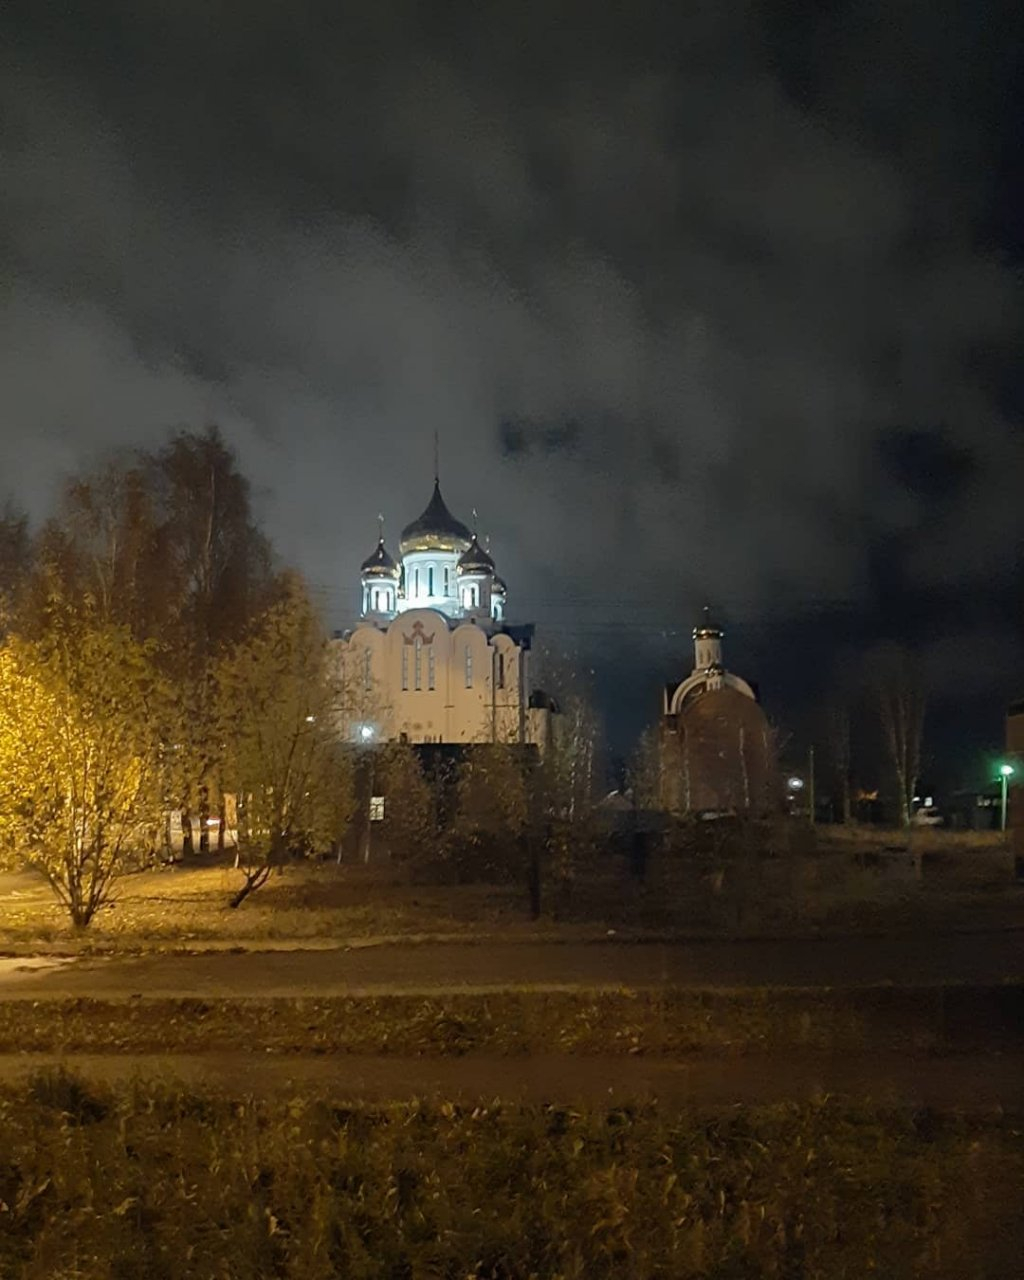 Фото дня в Сыктывкаре: белокаменный храм в осенней ночи